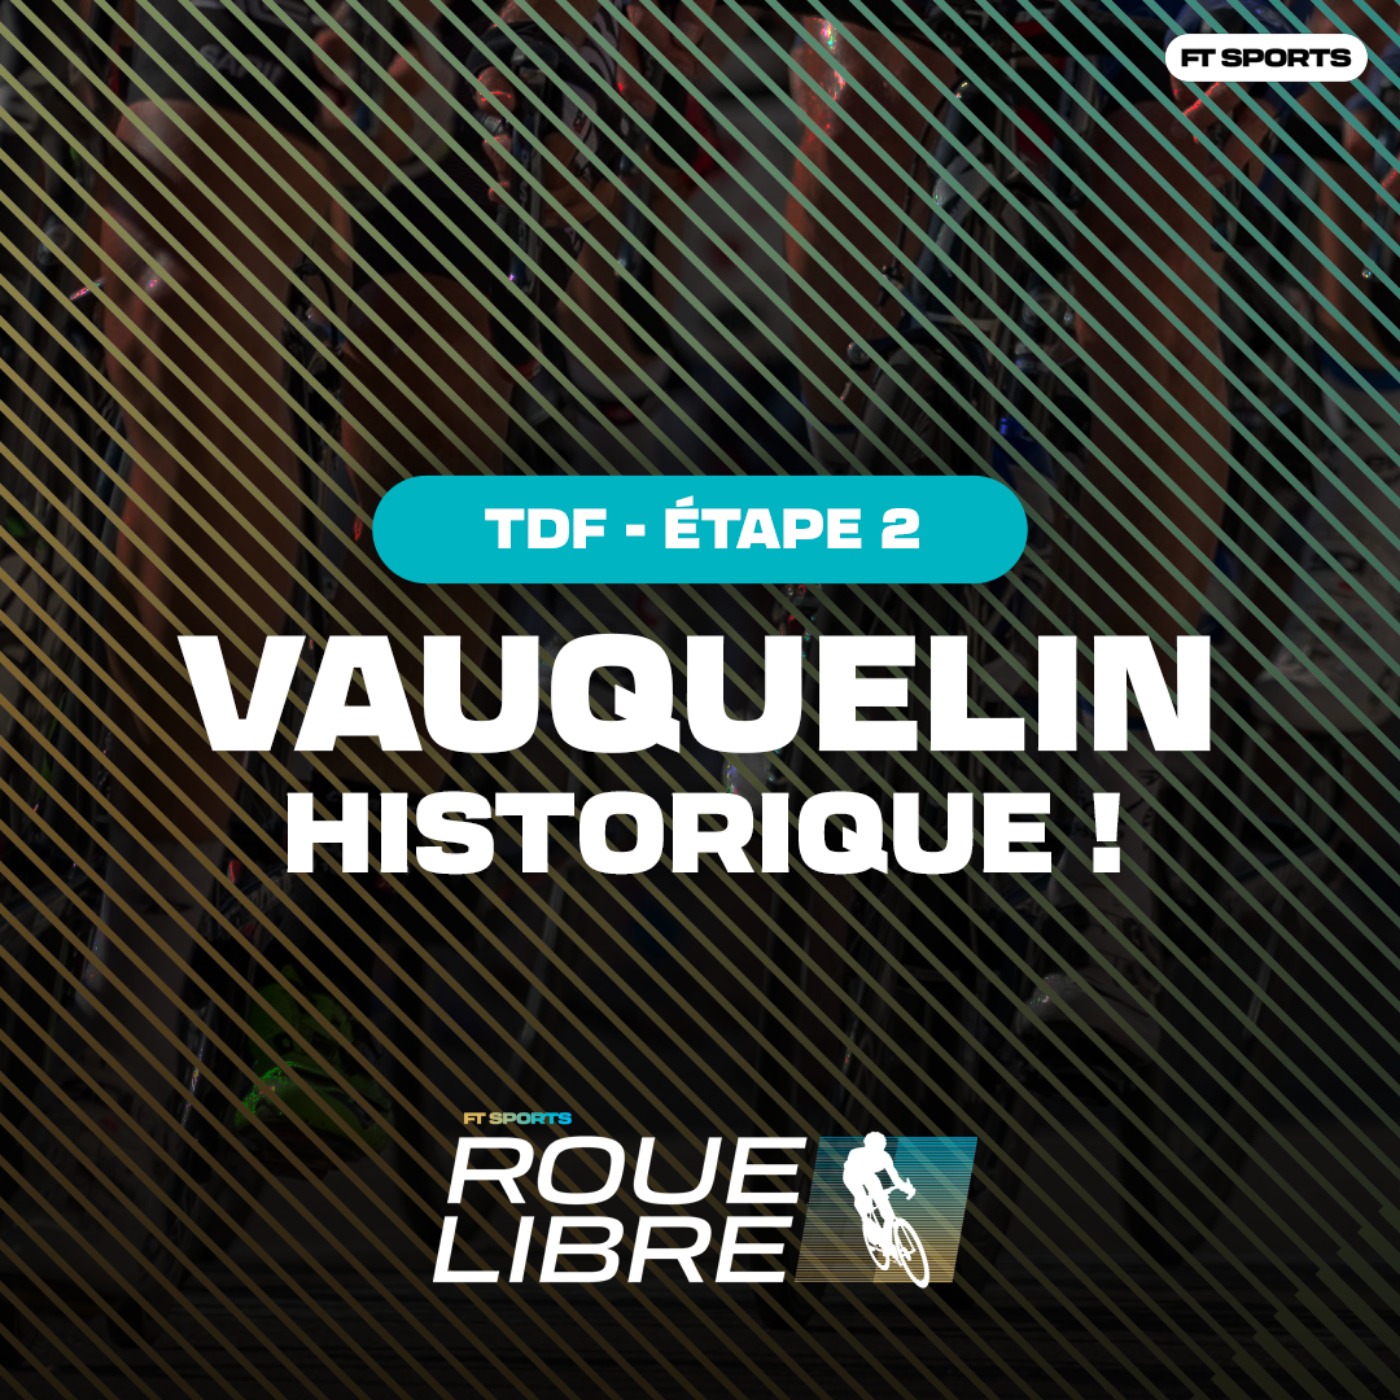 [TOUR DE FRANCE] VAUQUELIN HISTORIQUE ! Debrief étape 2 - Tour de France / Roue Libre